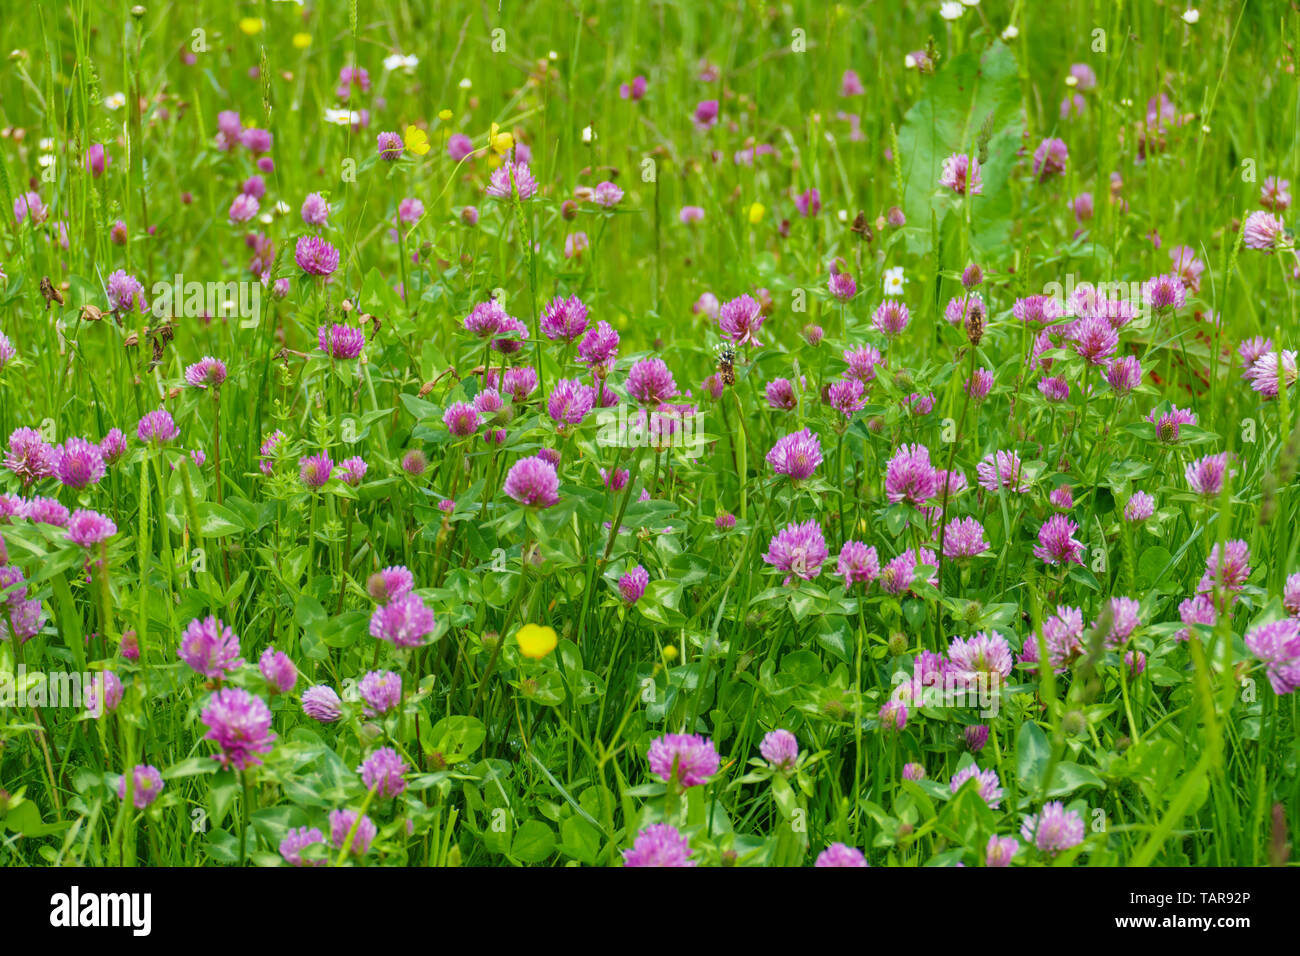 Roter Wiesen Klee Pflanze, mit lila, violett farbener Blüte und grünen Blättern, auf der Wiese Foto Stock